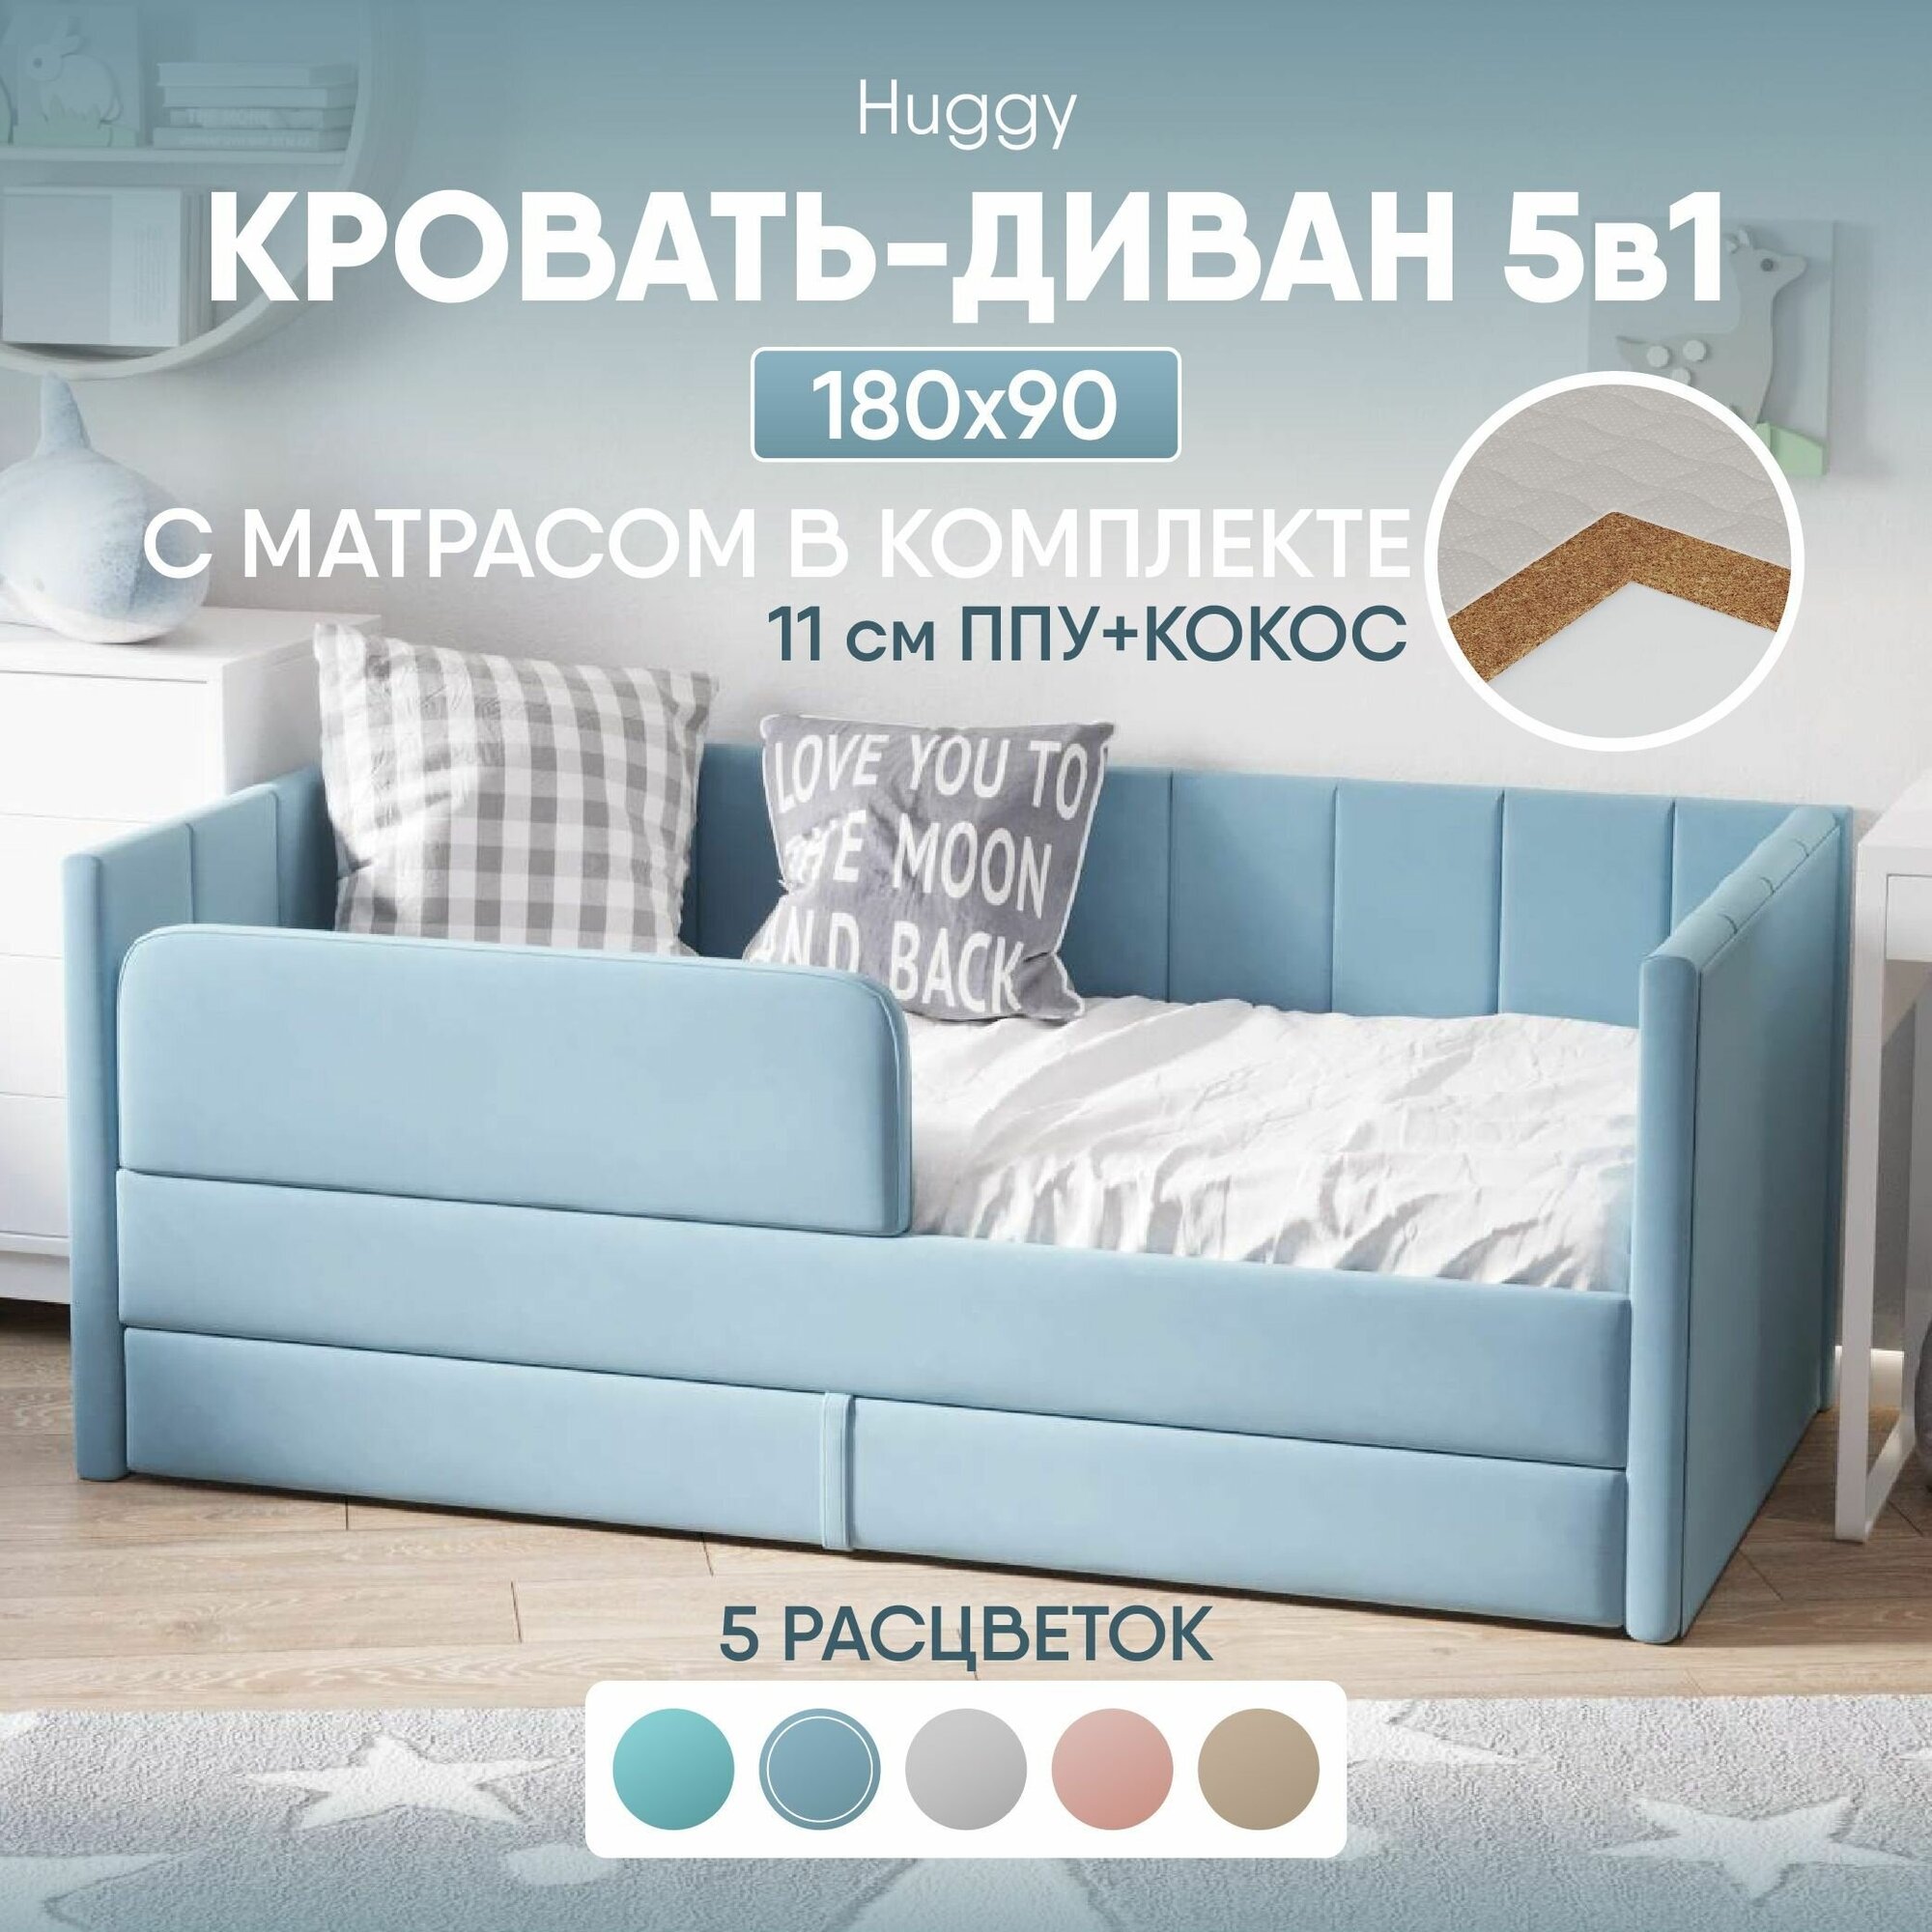 Кровать диван с матрасом 180х90 Huggy выкатной от 3 лет, цвет Голубой, тахта кровать детская односпальная подростковая с ящиком и защитными бортиками